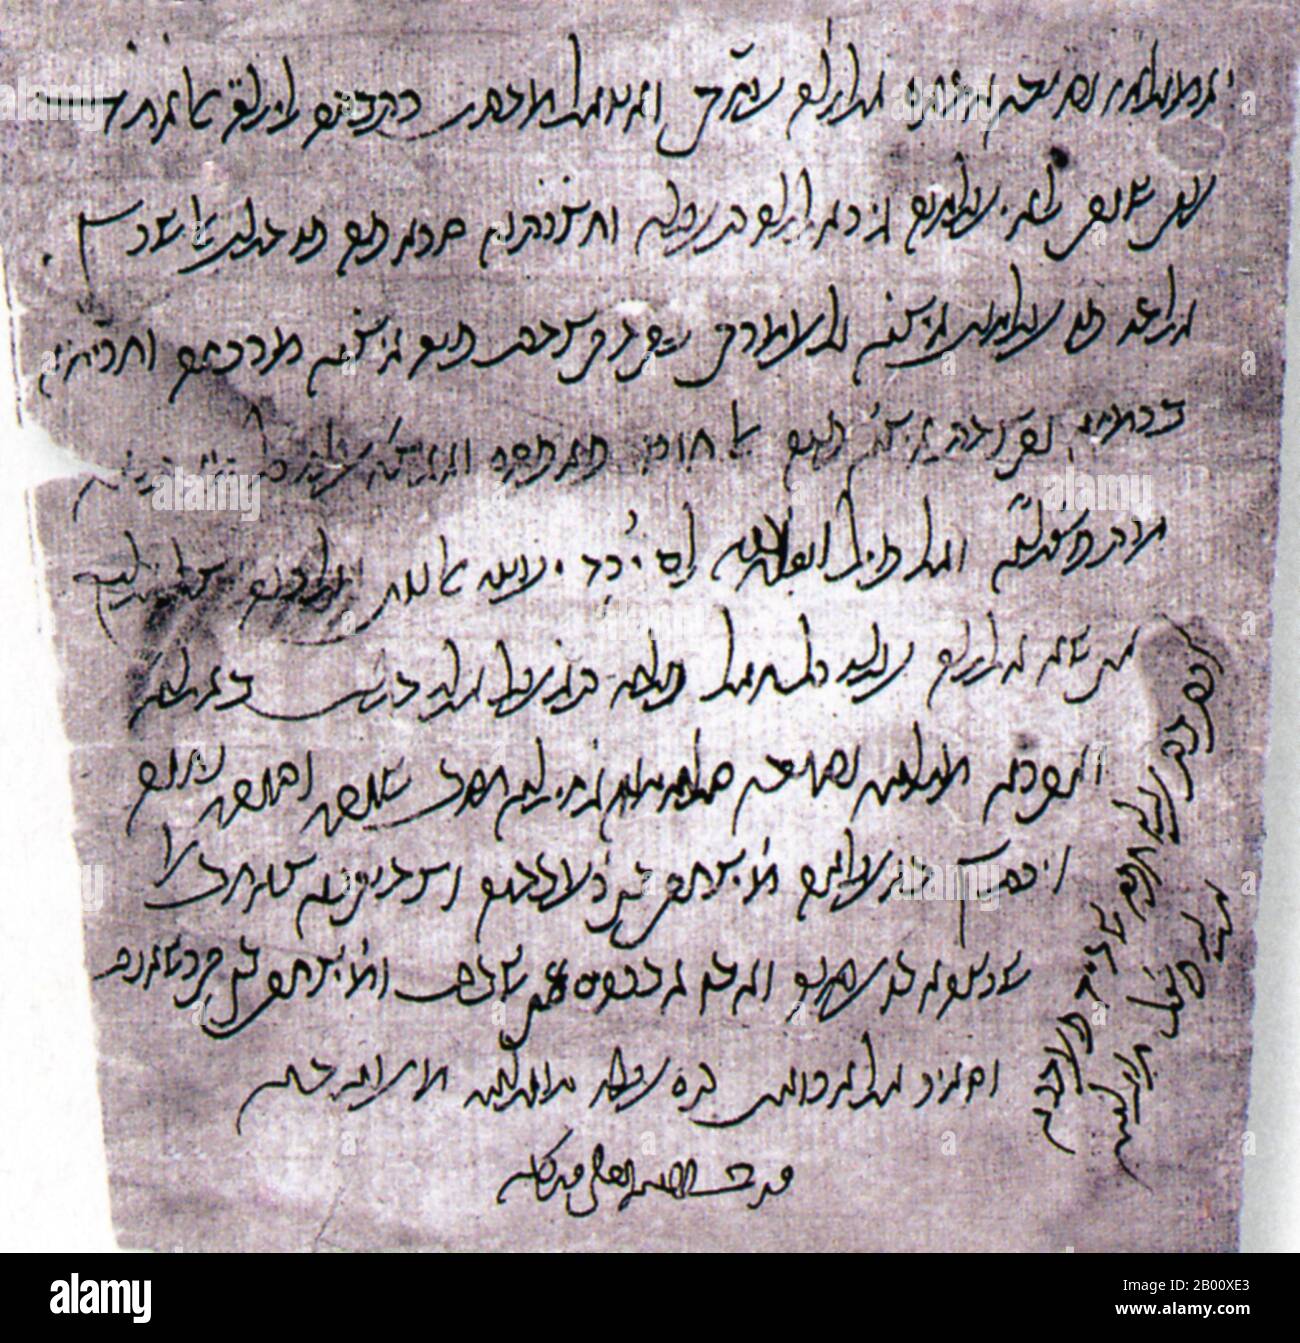 Palestine/Israël/Égypte: Écrit en arabe, en utilisant l'alphabet hébreu, cette lettre de remerciement est l'un des milliers de documents papier trouvés dans le Geniza du Caire en 1896. Le Geniza du Caire est une accumulation de près de 280,000 fragments de manuscrits juifs qui ont été trouvés dans la «genizah», ou salle de magasin, de la synagogue Ben Ezra à Fustat, actuellement le Vieux Caire. Les documents ont été écrits à partir d'environ 870 ce jusqu'en 1880. Banque D'Images